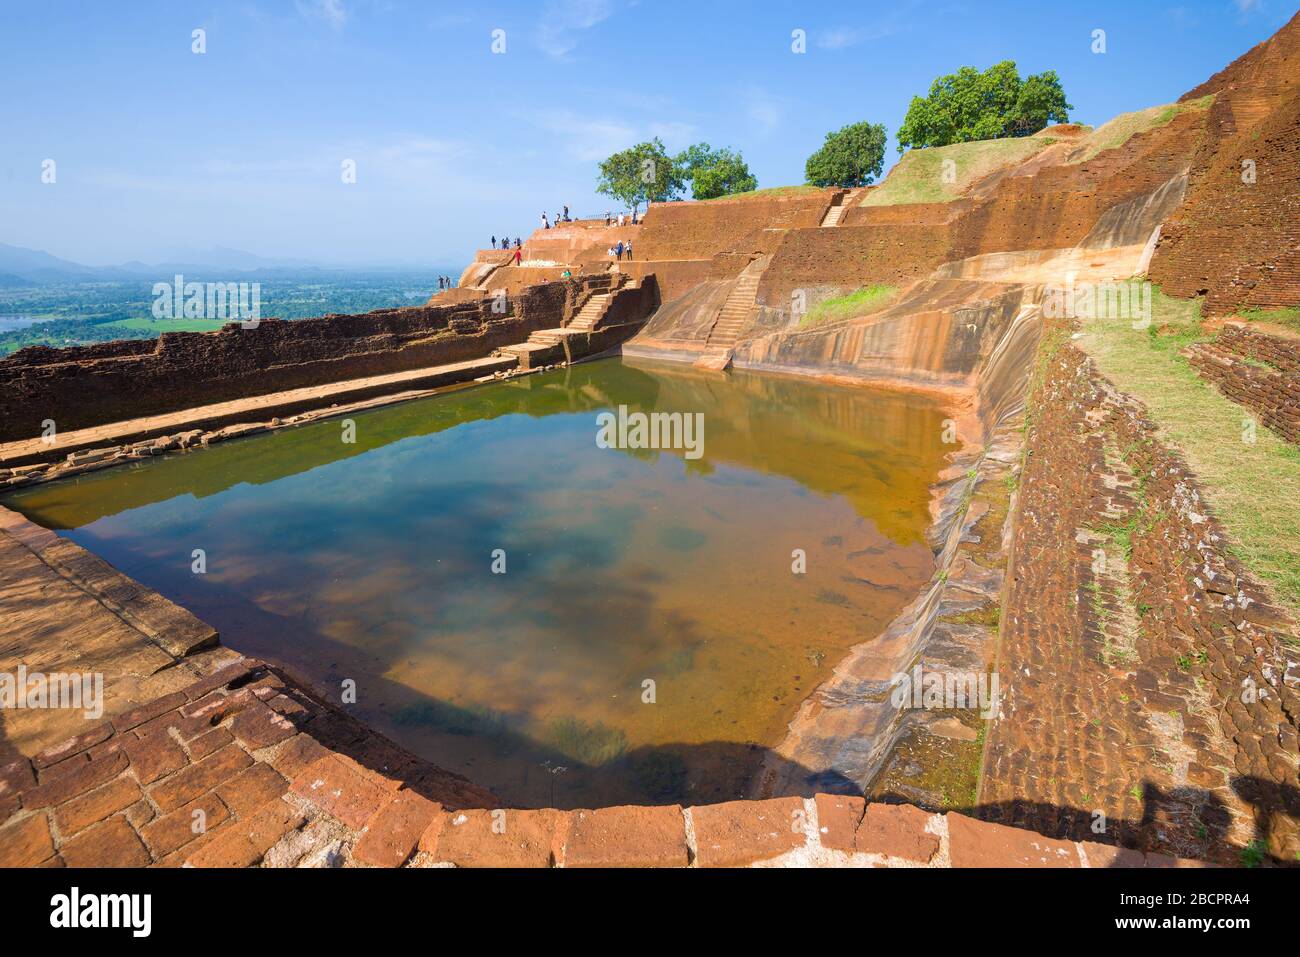 Blick auf den zentralen Pool des alten königlichen Palastes auf dem Sigiriya-Berg. Sri Lanka Stockfoto